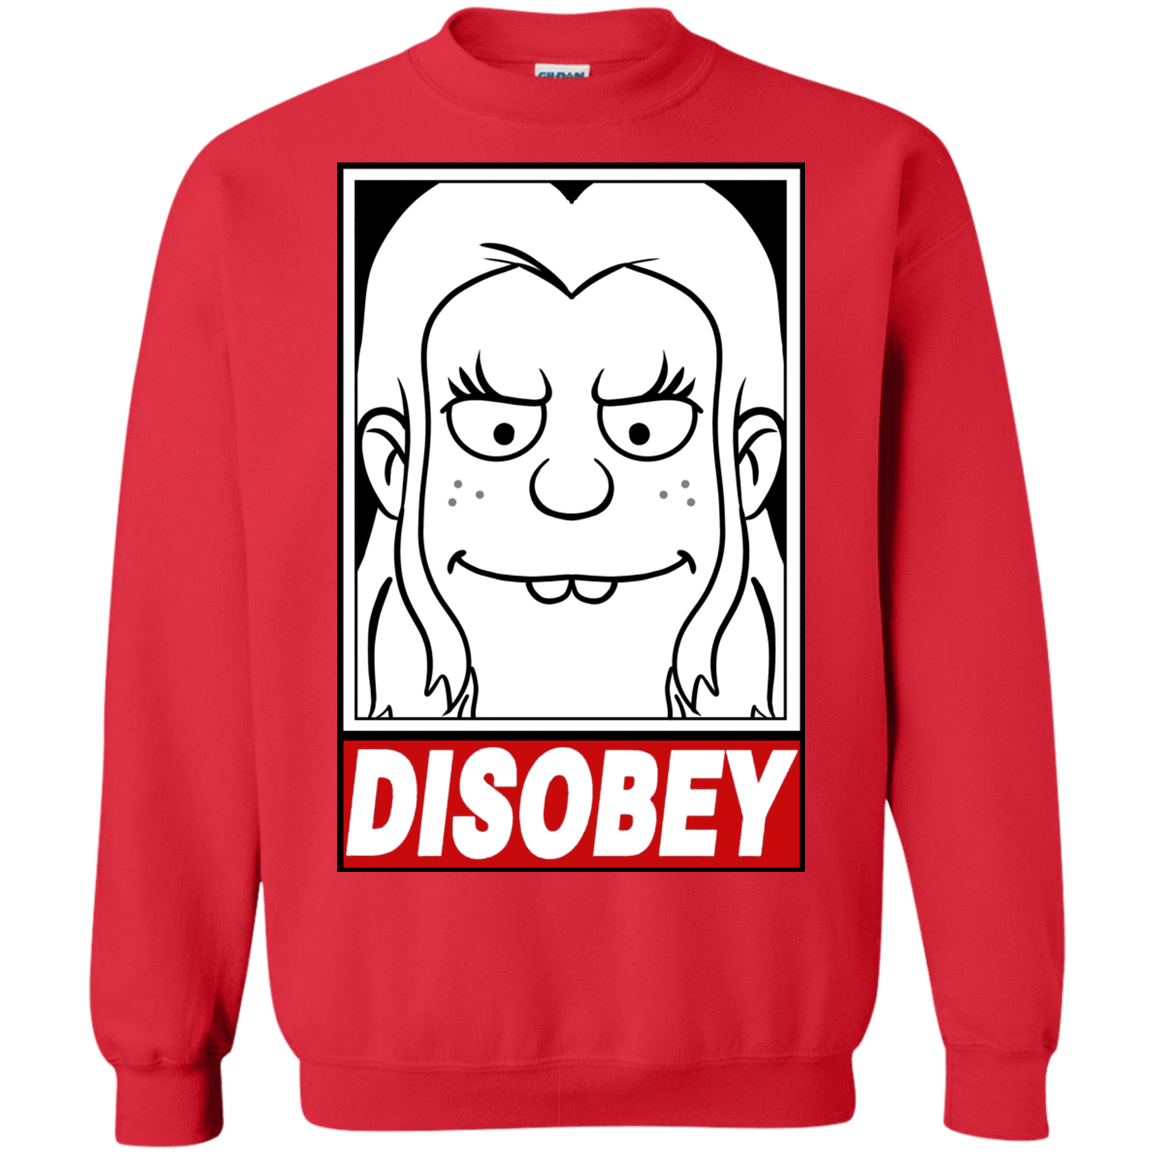 Sweatshirts Red / S Disobey Crewneck Sweatshirt